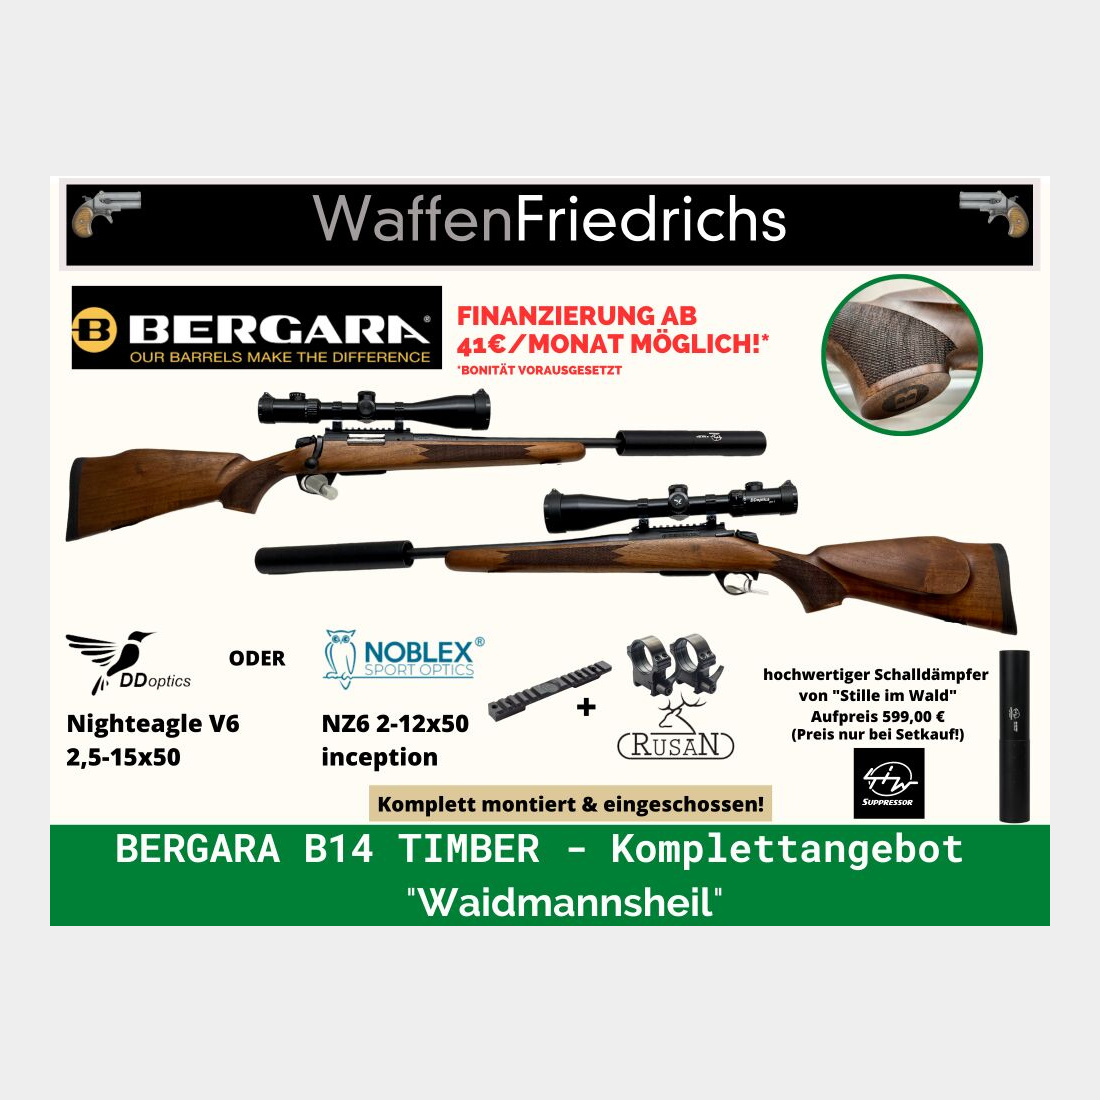 Bergara	 B14 Timber | Waidmannsheil| Komplettangebot - Waffen Friedrichs